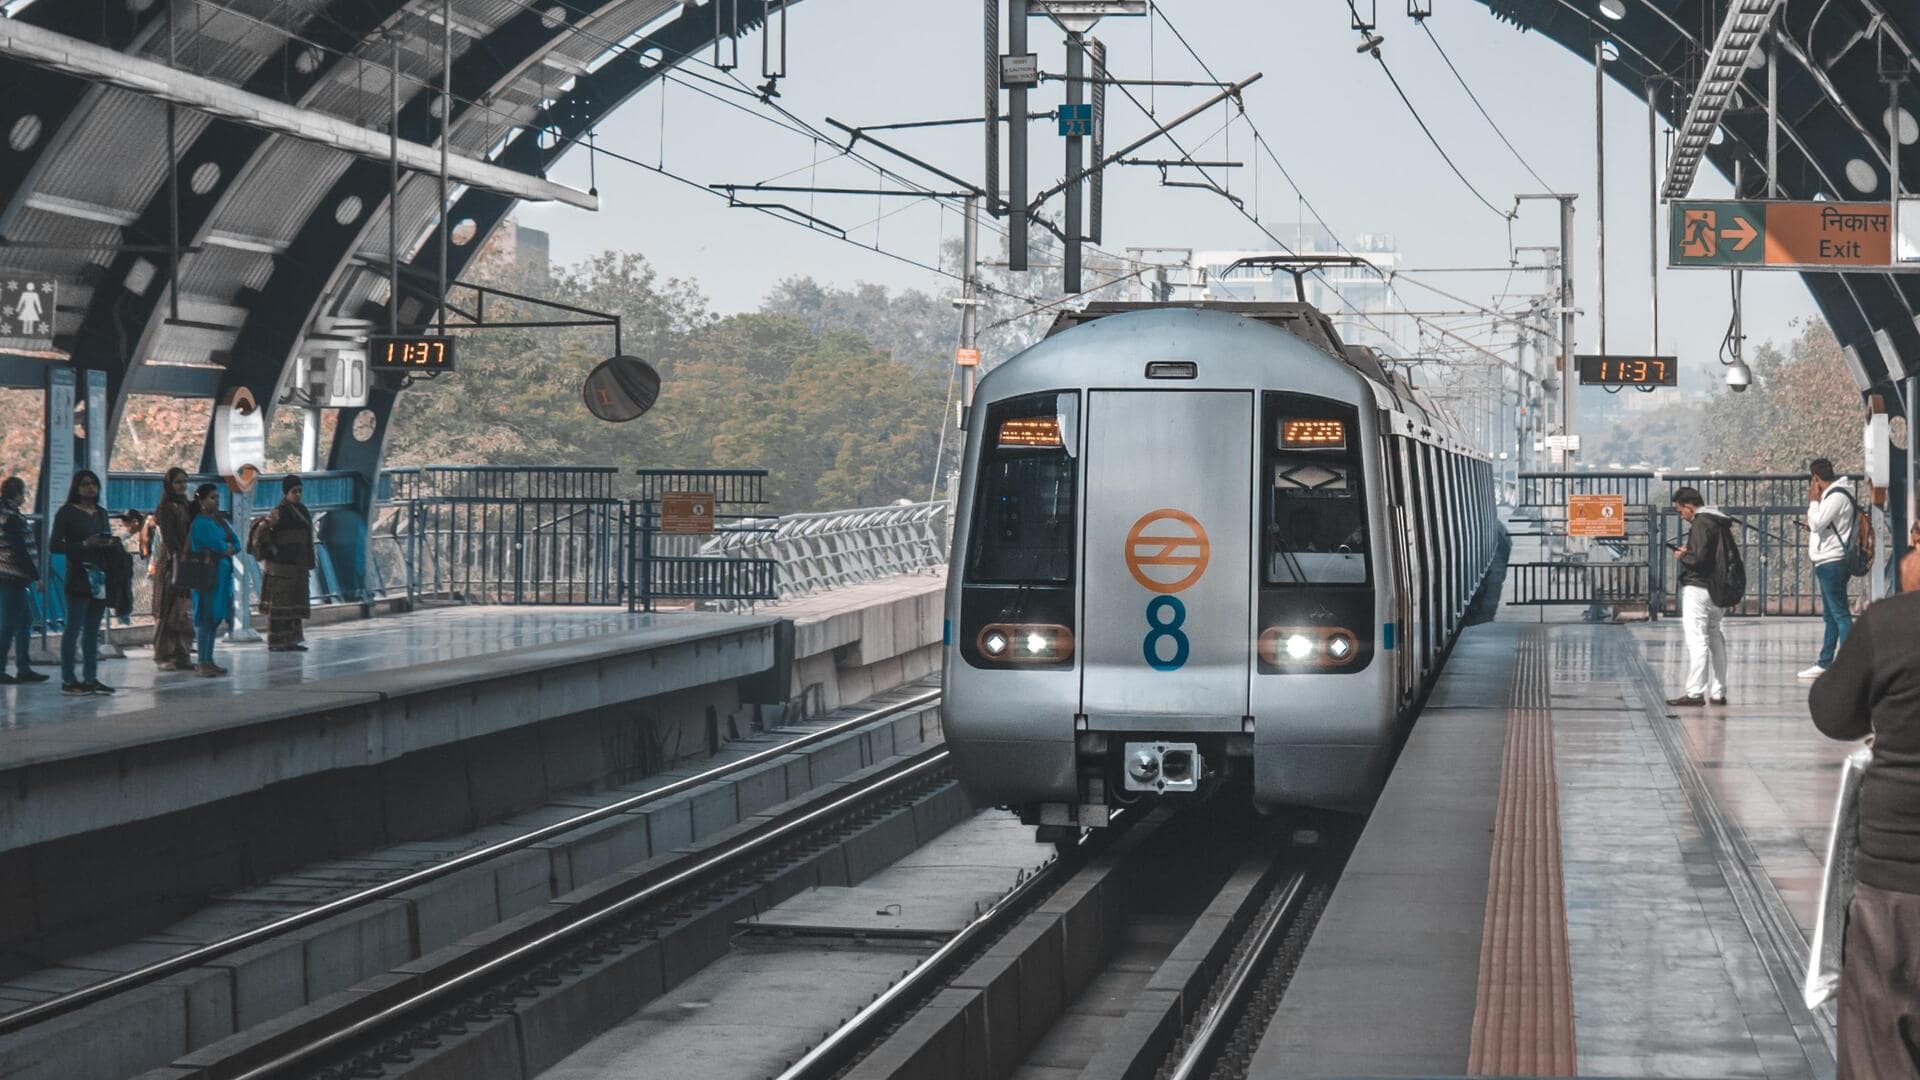 दिल्ली: नजफगढ़ स्टेशन पर मेट्रो के आगे कूदकर व्यक्ति ने दी जान, प्रभावित हुई सेवा